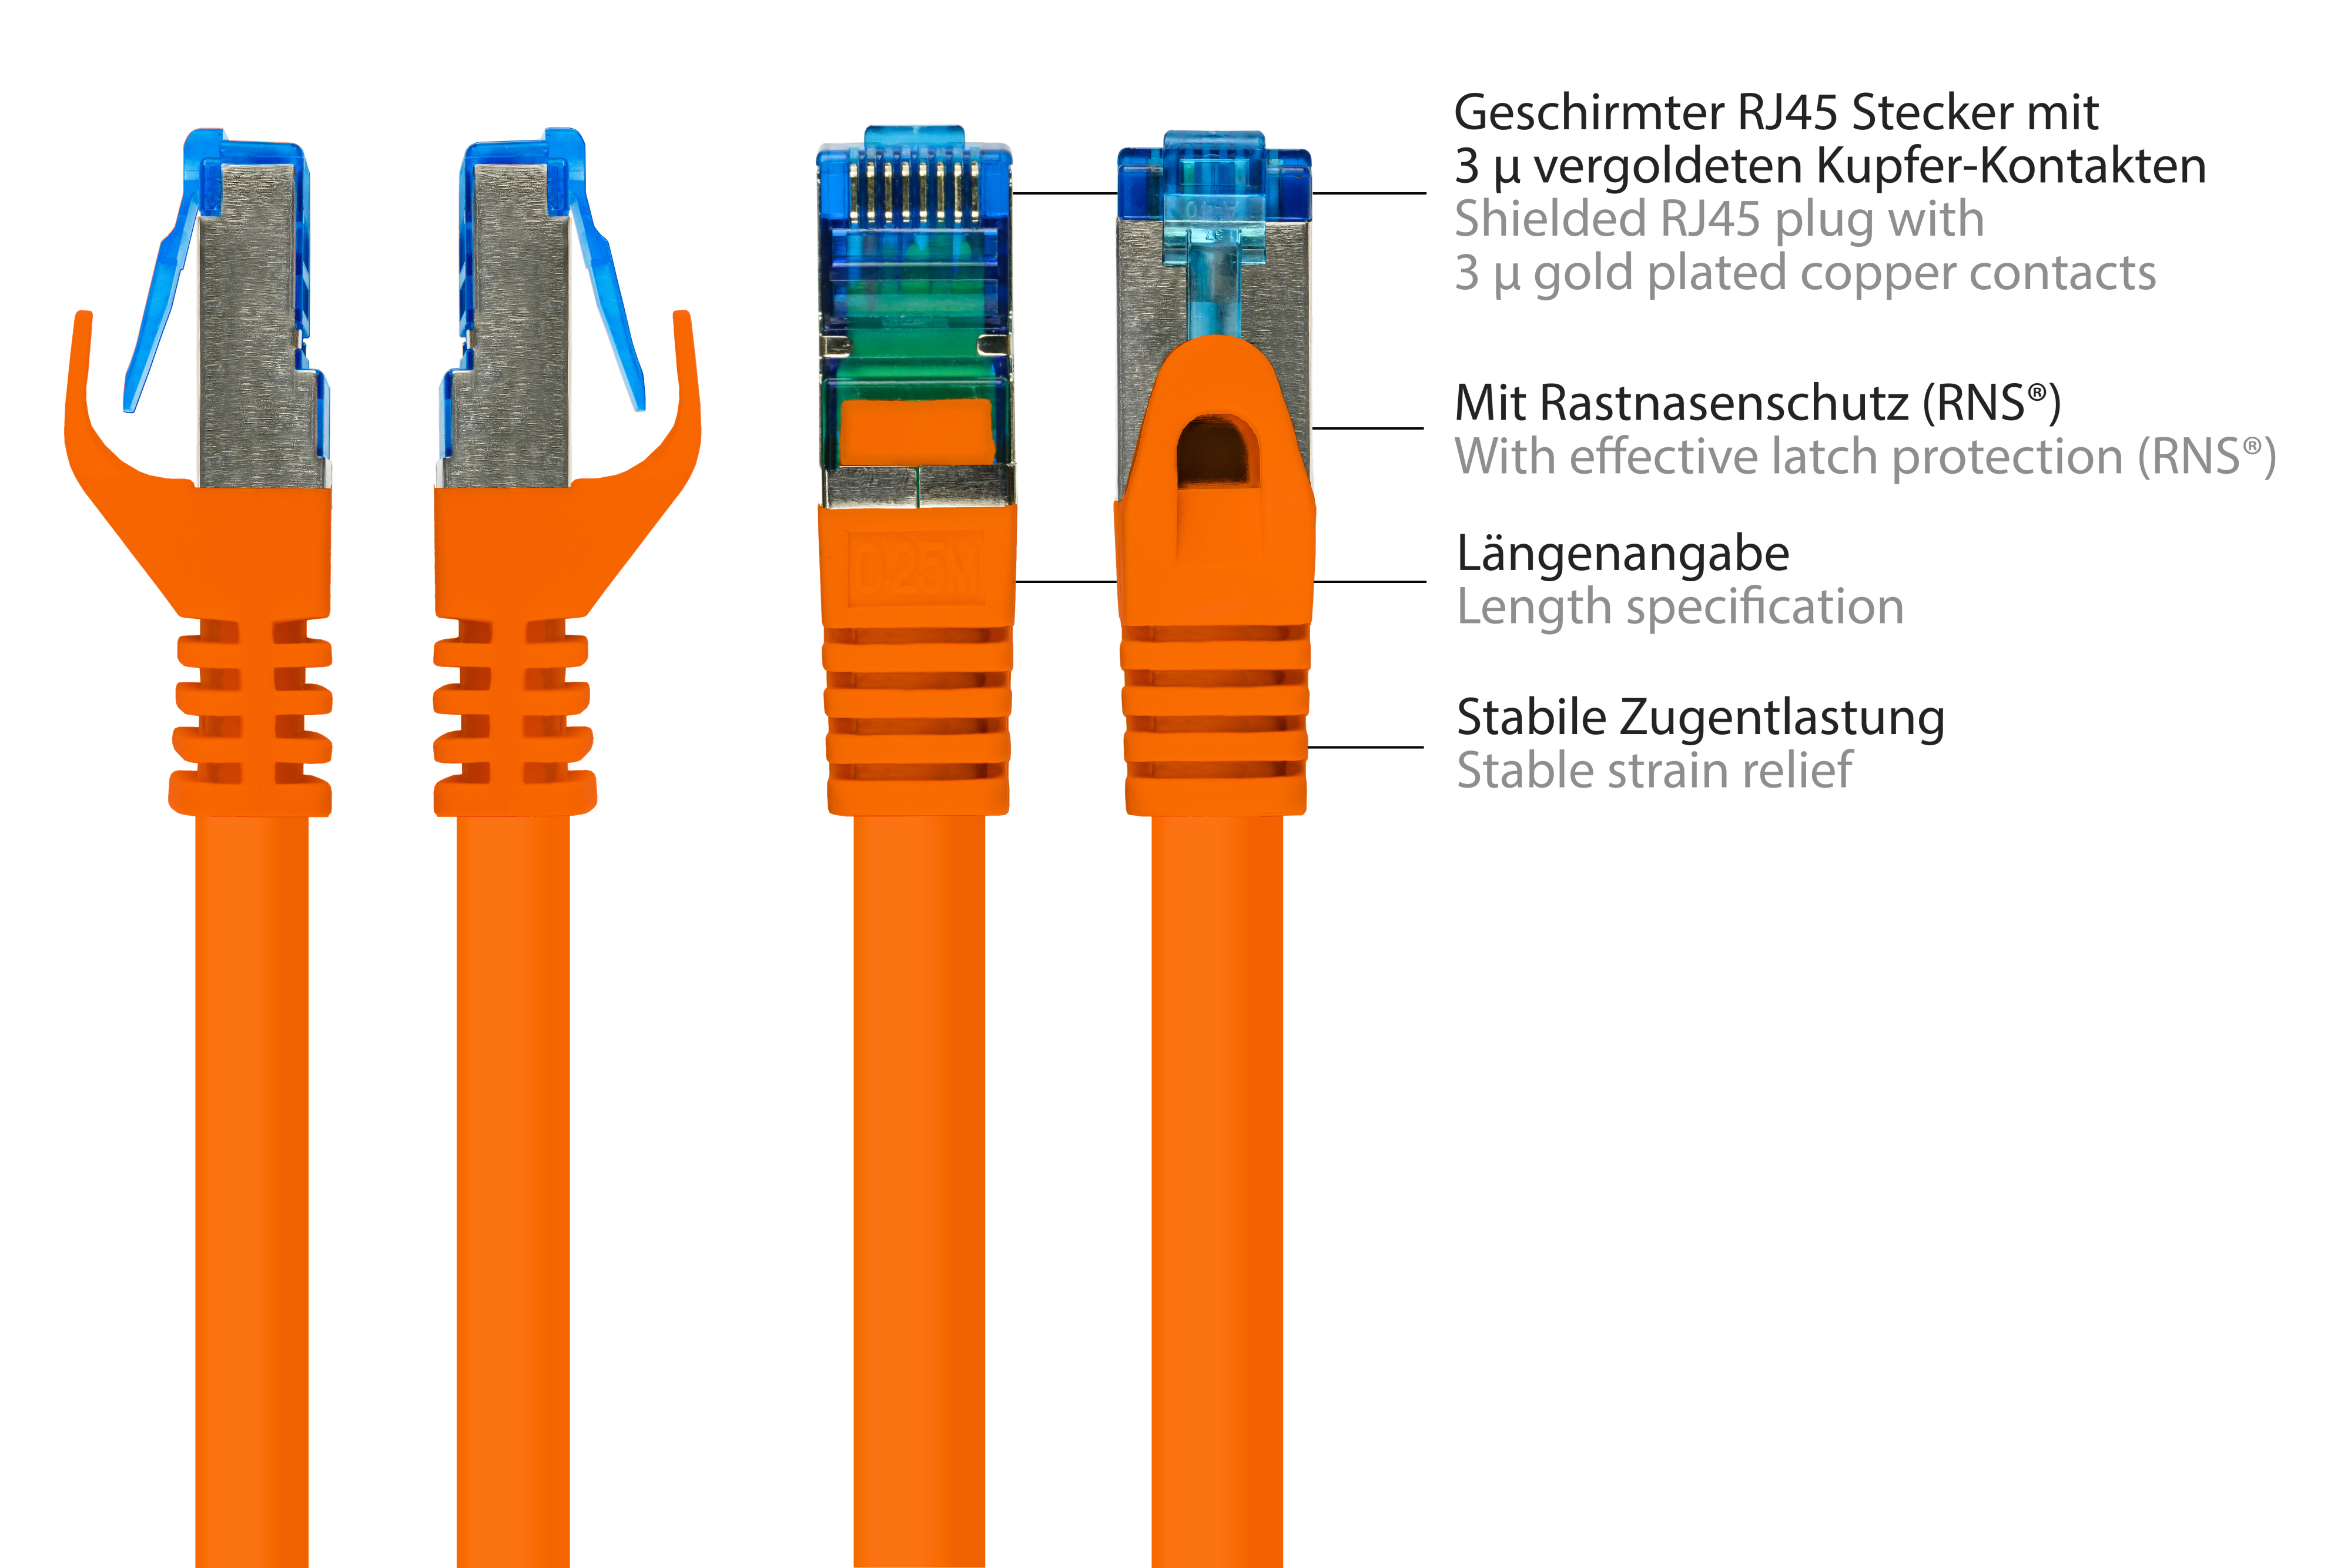 GOOD CONNECTIONS S/FTP, PiMF, halogenfrei, 500MHz, Netzwerkkabel, orange, 40 m